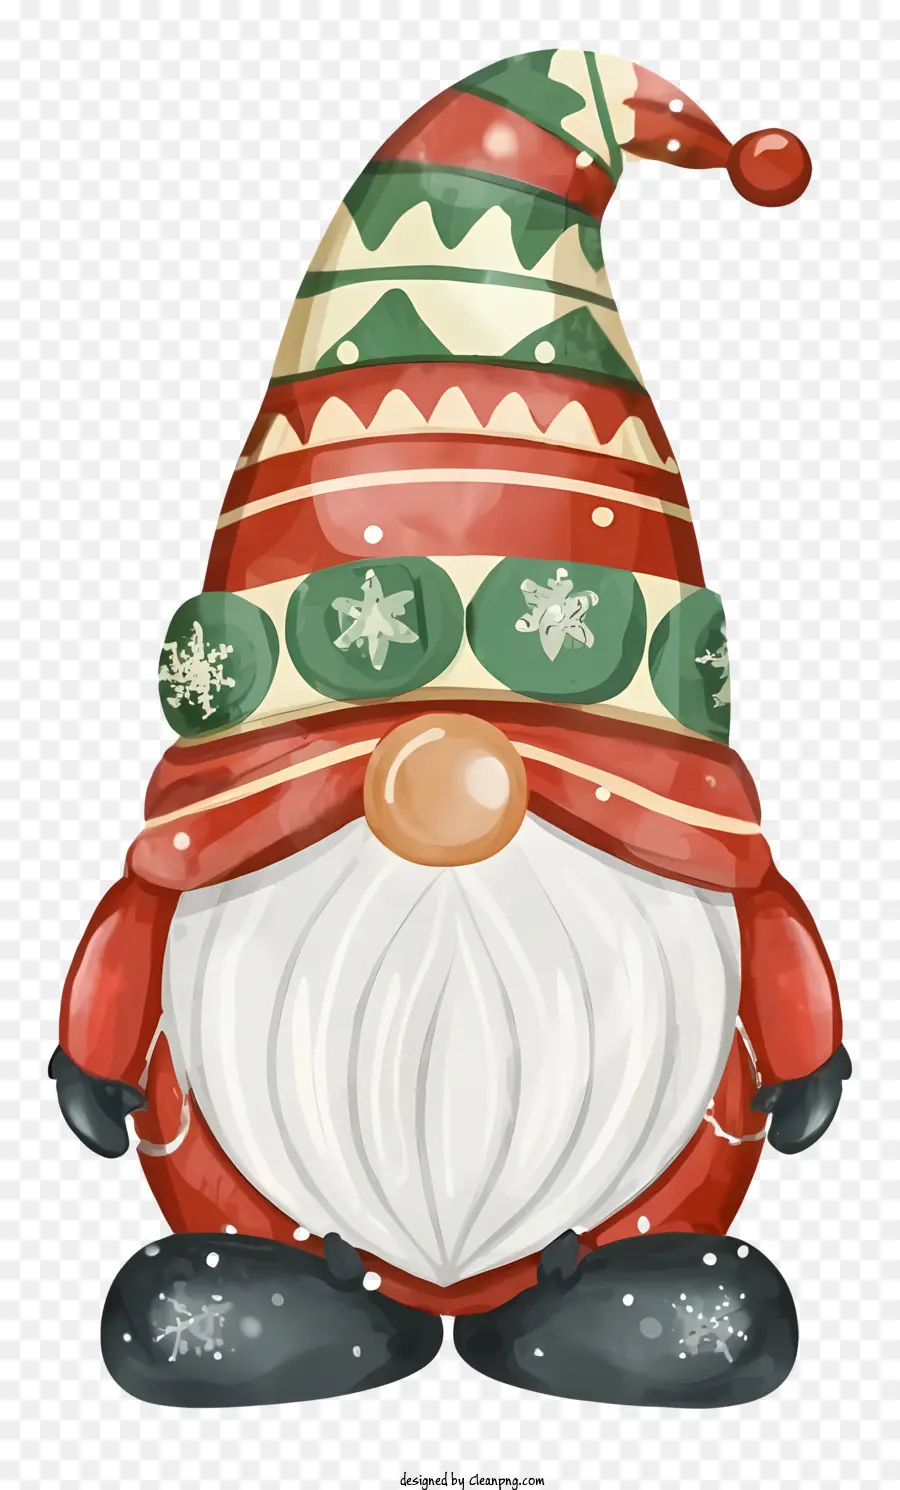 đồ trang trí giáng sinh - Gnome vui vẻ mặc màu đỏ và màu xanh lá cây